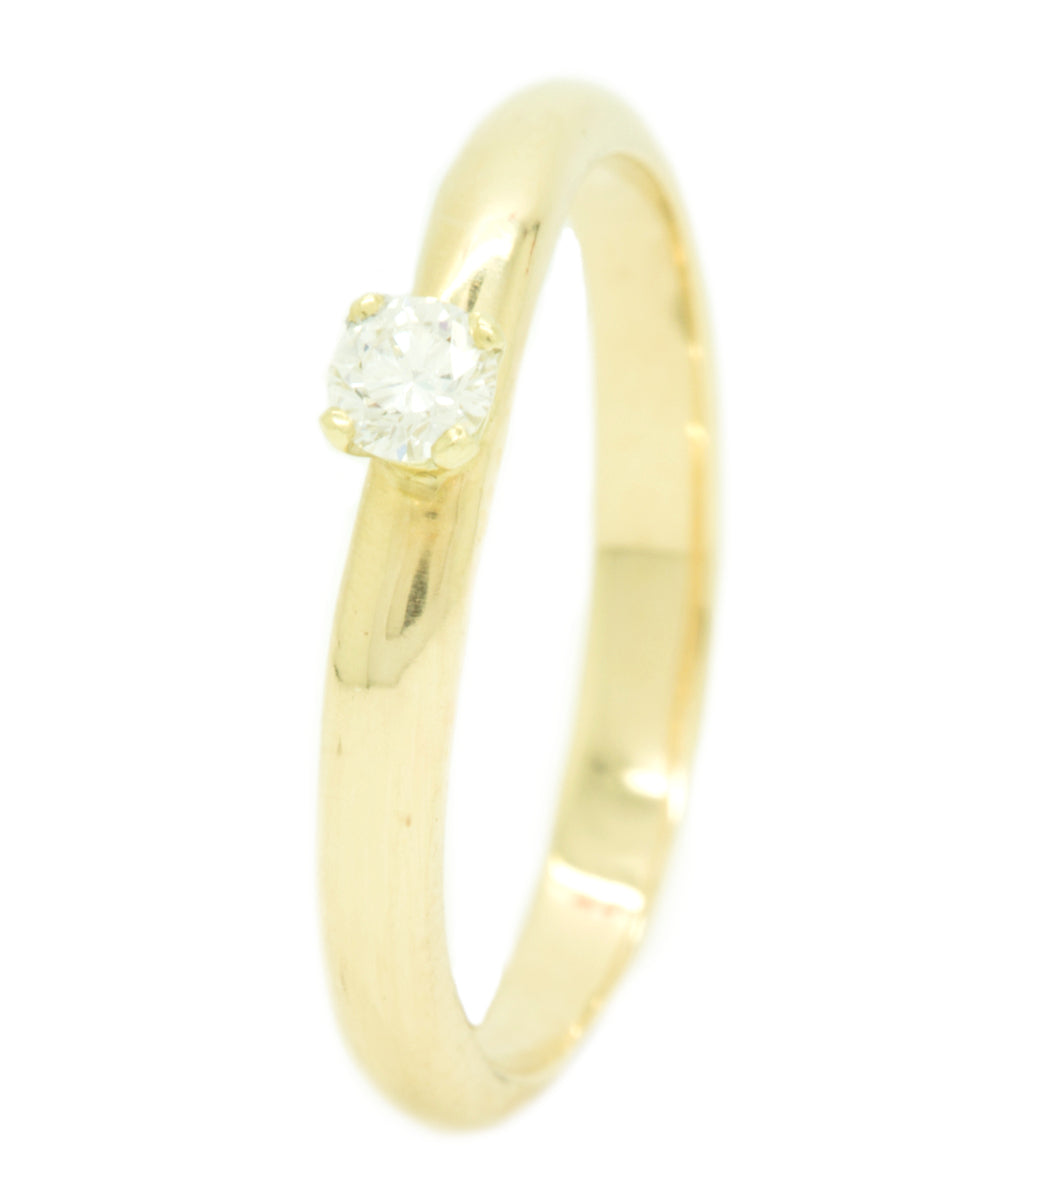 Handgemaakte en fairtrade organische gouden ring met briljant geslepen diamant